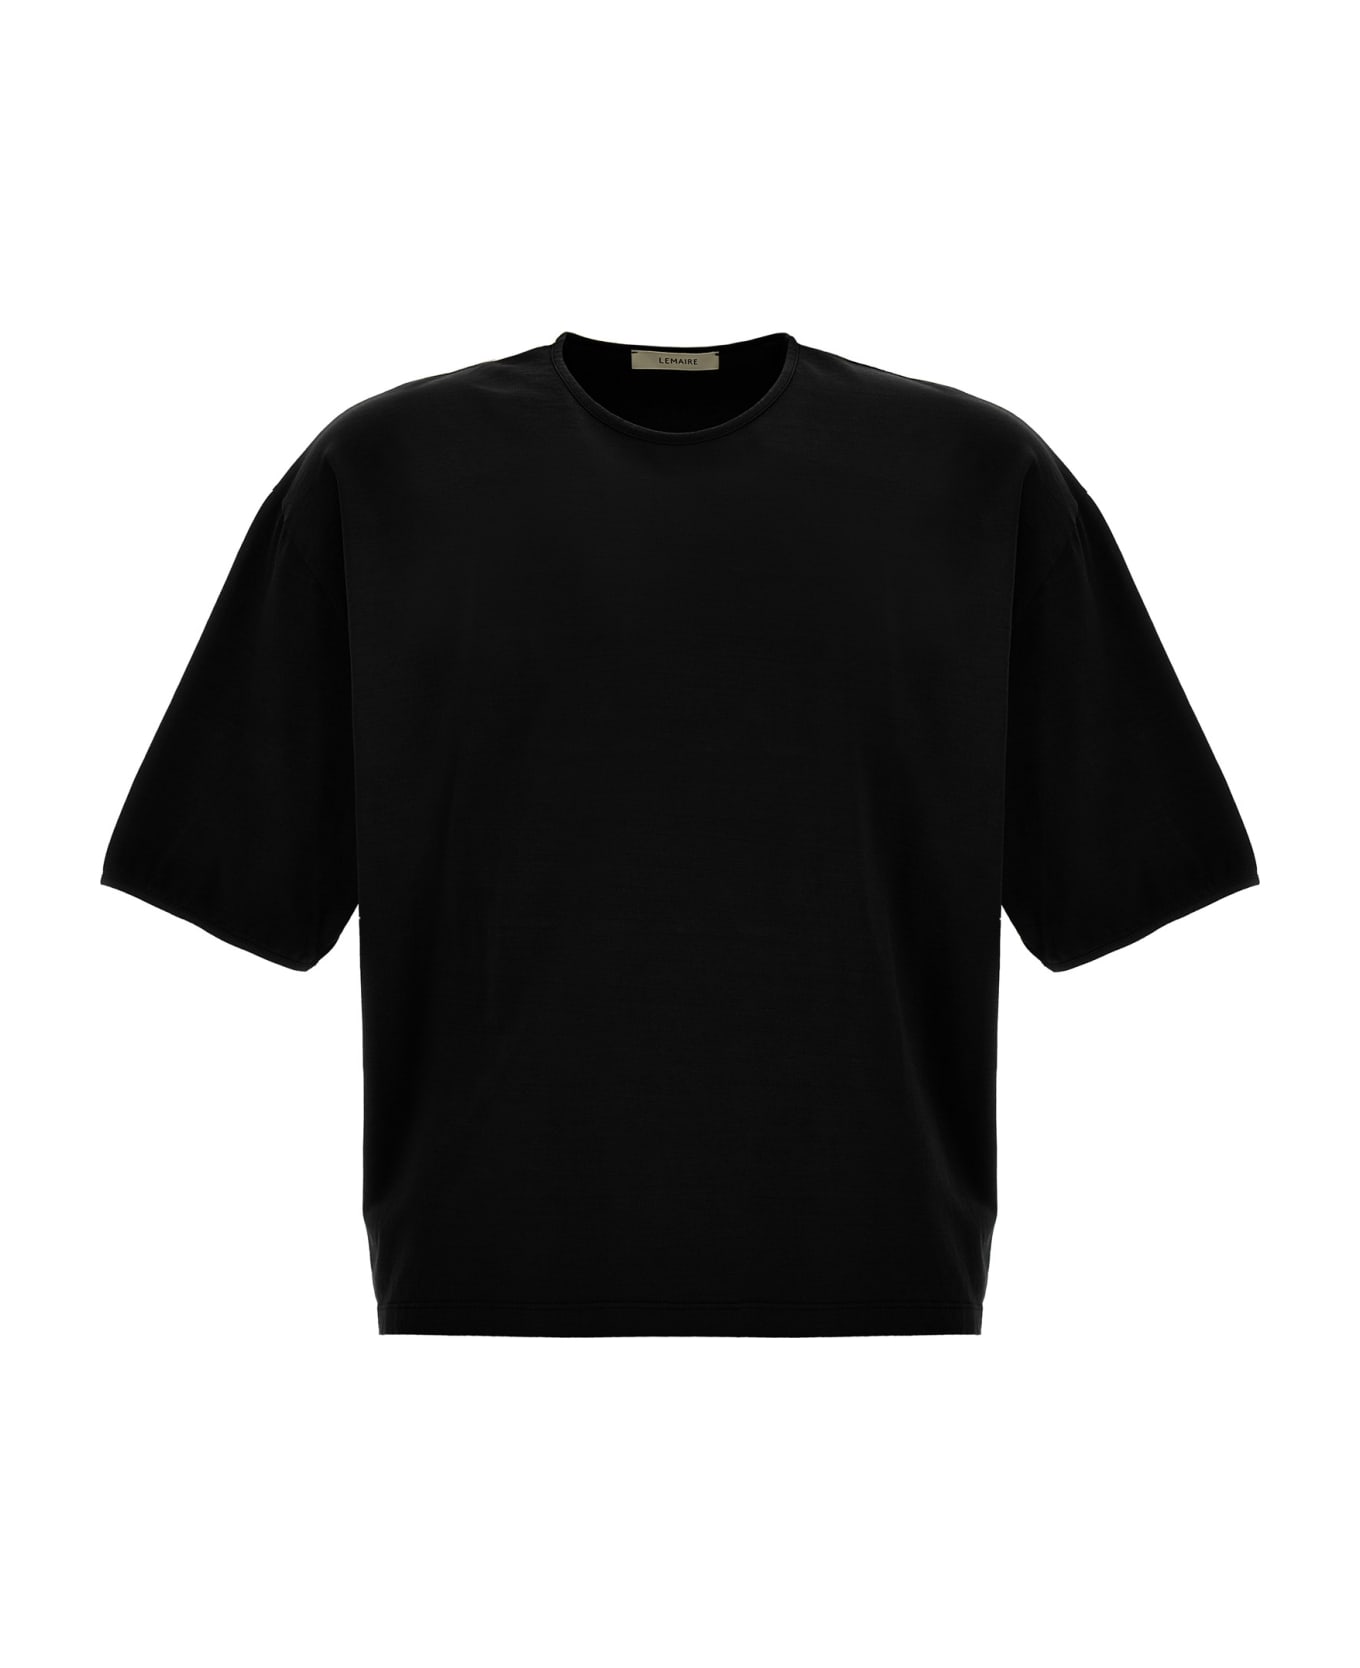 Lemaire Mercerized Cotton T-shirt - Black   シャツ